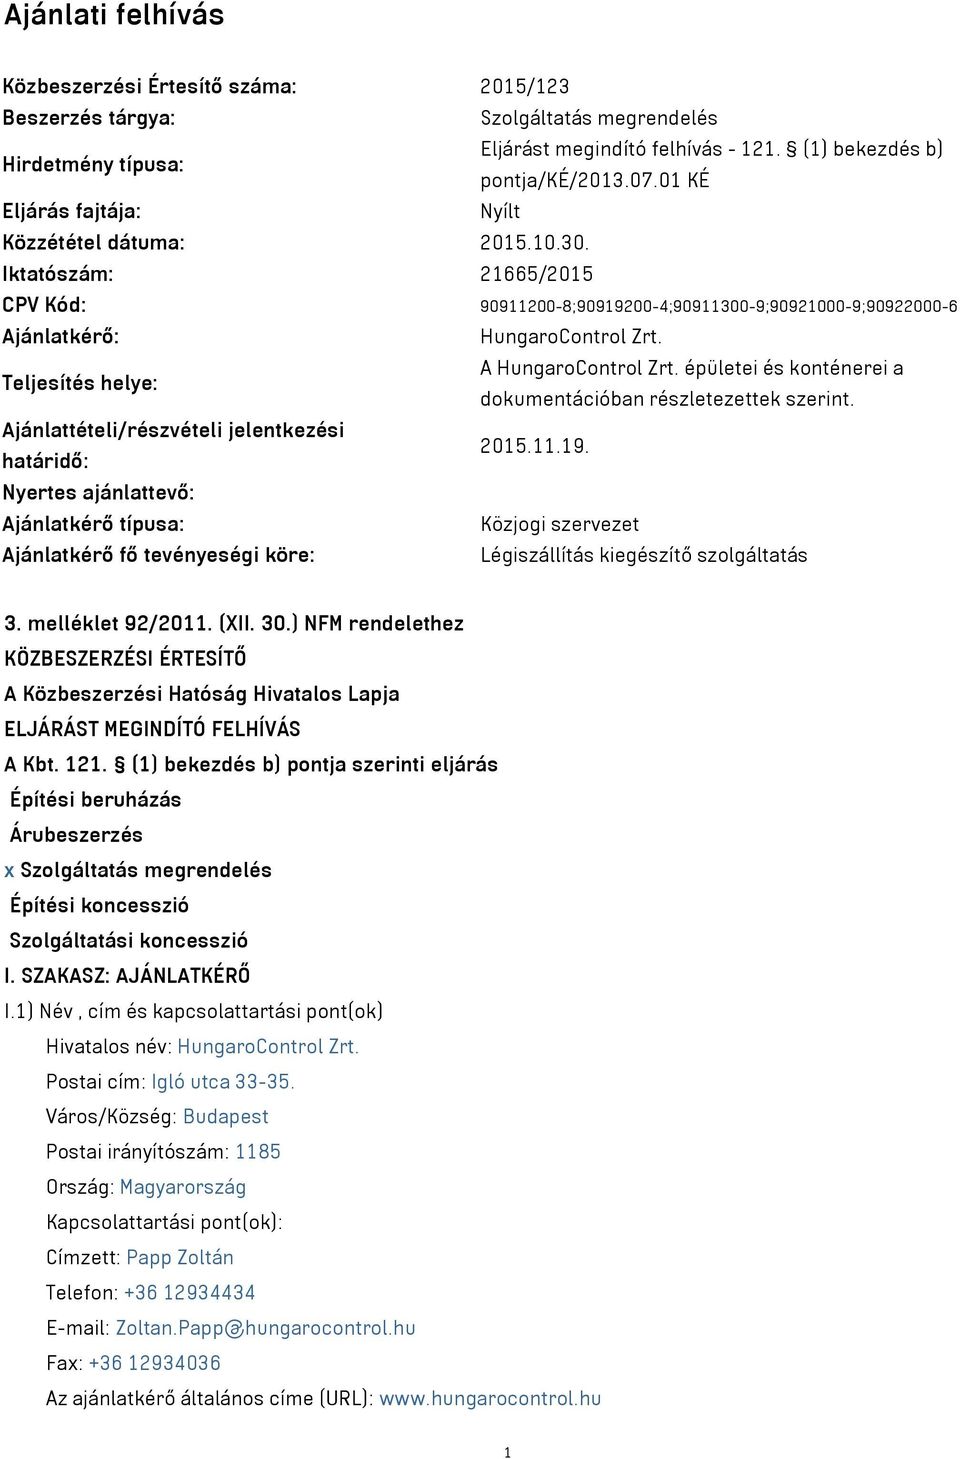 Teljesítés helye: A HungaroControl Zrt. épületei és konténerei a dokumentációban részletezettek szerint. Ajánlattételi/részvételi jelentkezési határidő: 2015.11.19.